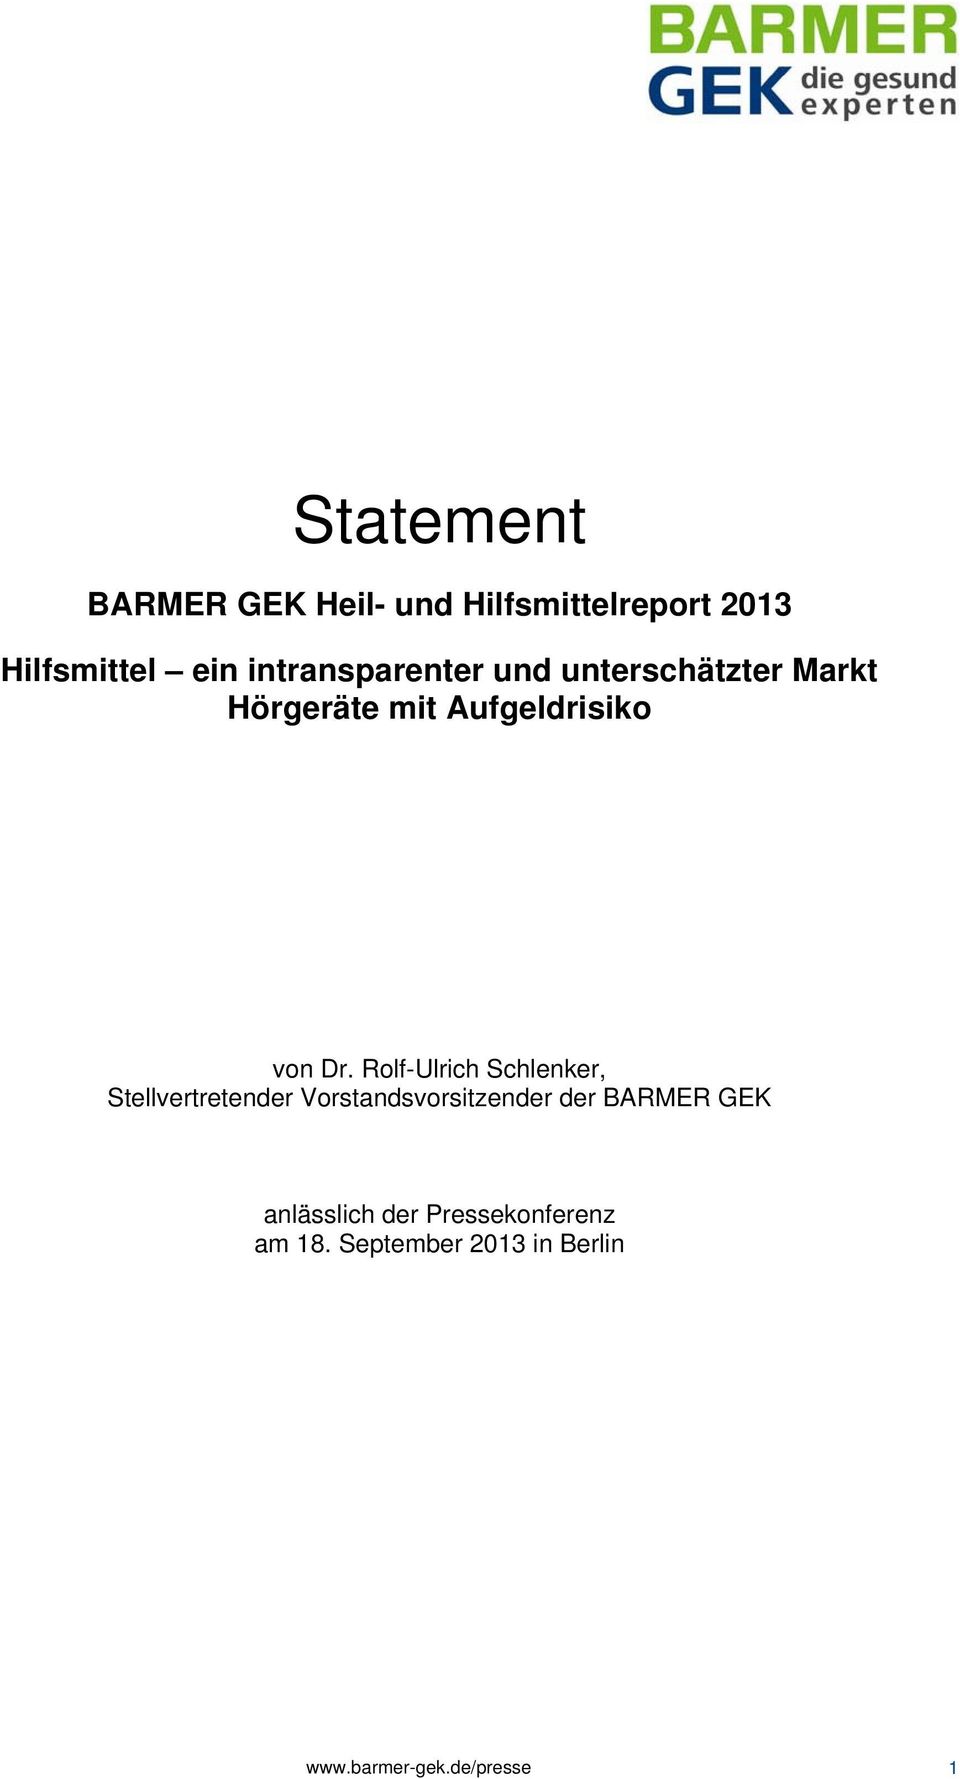 Rolf-Ulrich Schlenker, Stellvertretender Vorstandsvorsitzender der BARMER GEK